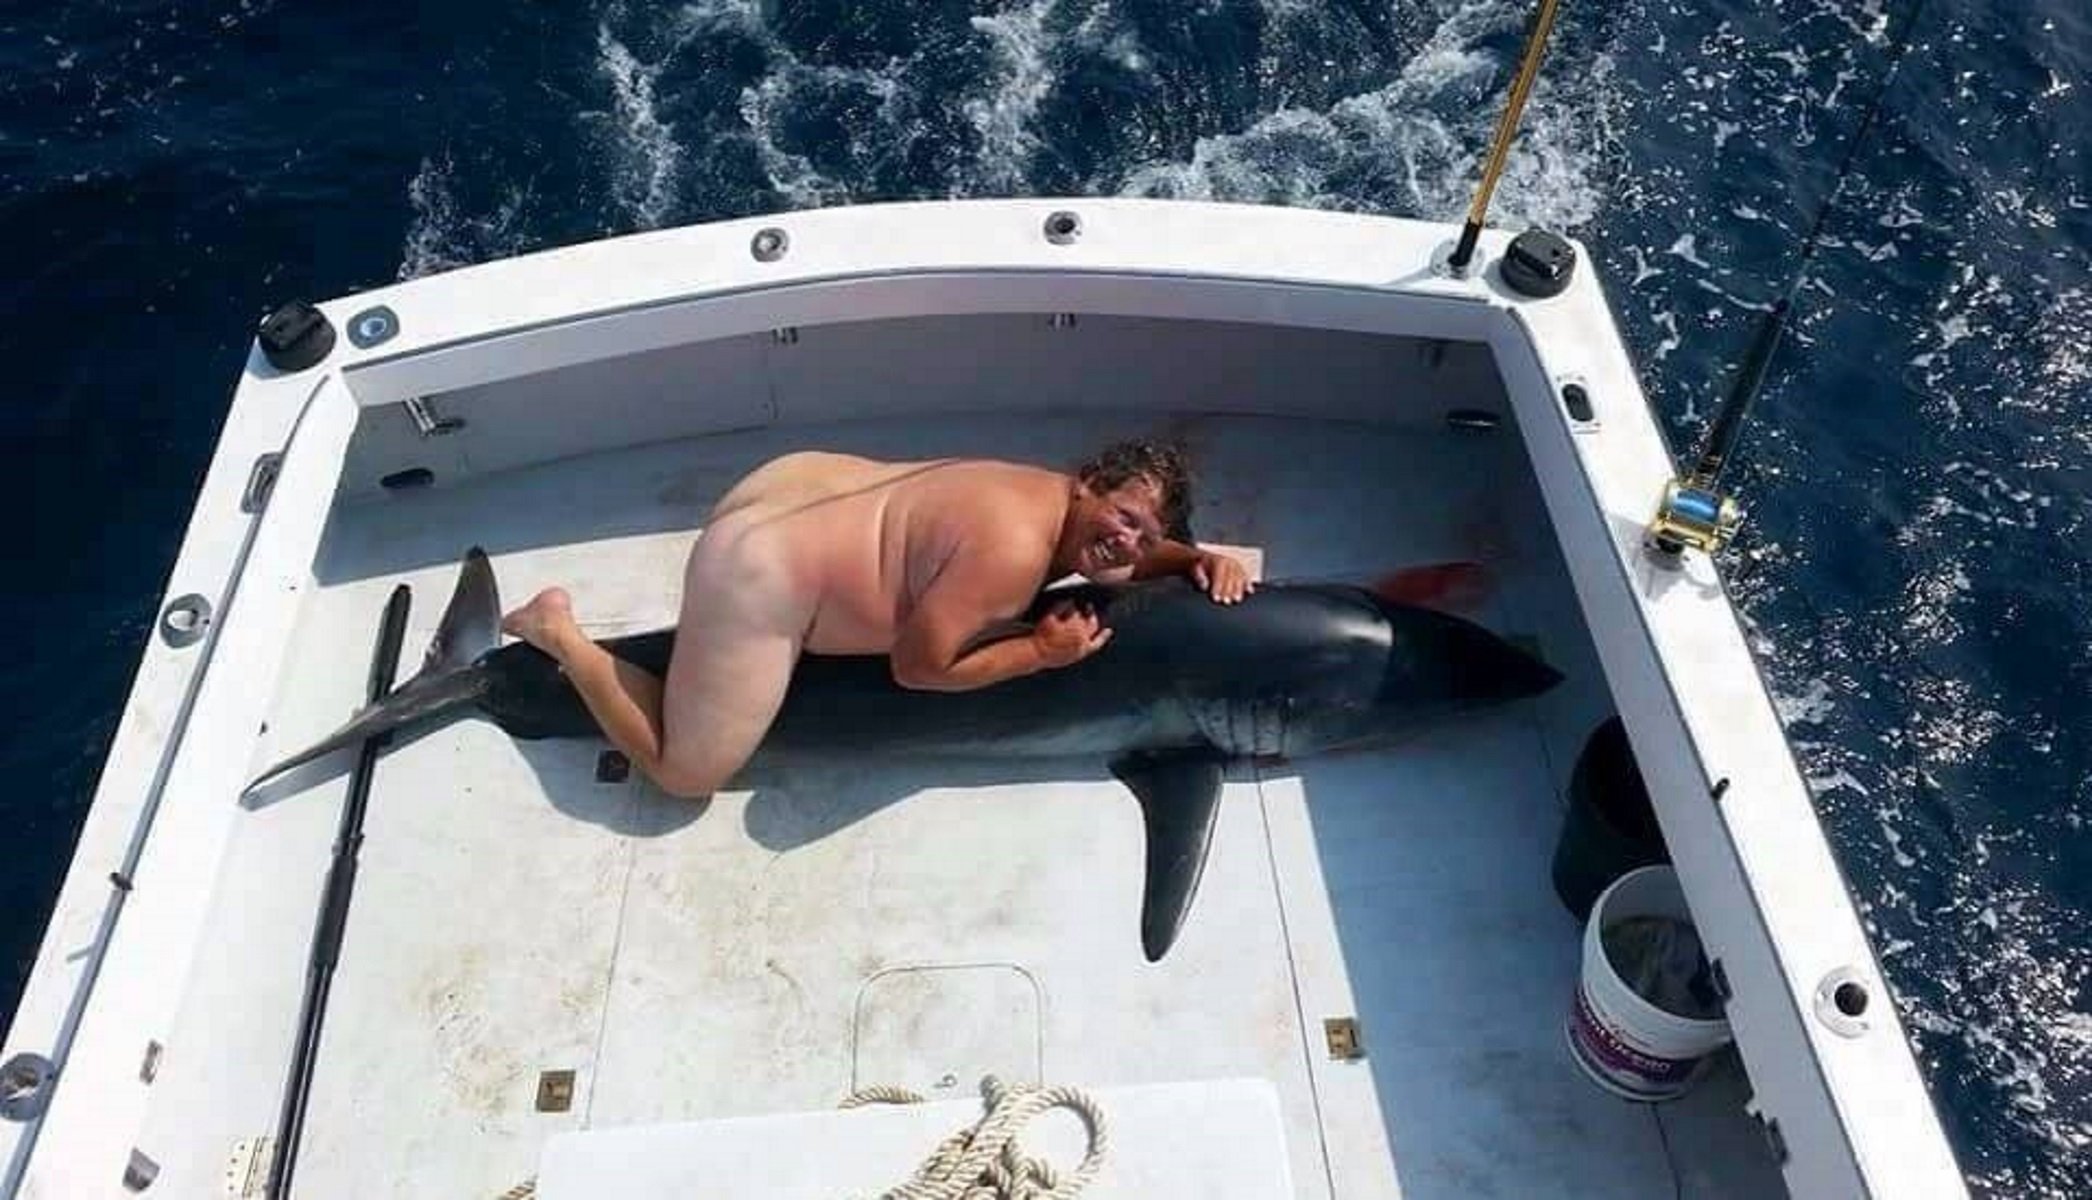 El misterio del hombre que aparece desnudo sobre un tiburón